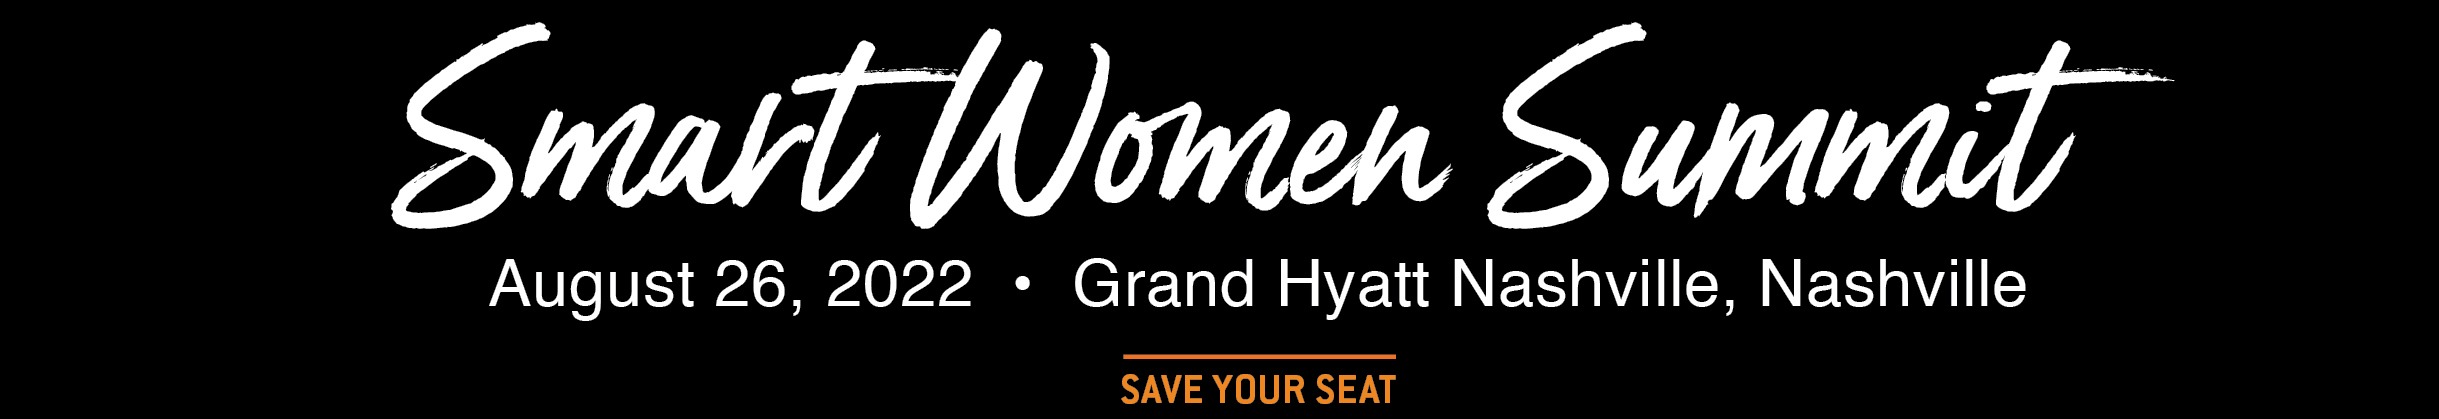 A graphic reading, "Smart women Summit: August 26, 2022. Grand Hyatt Nashville, Nashville. Save your seat"